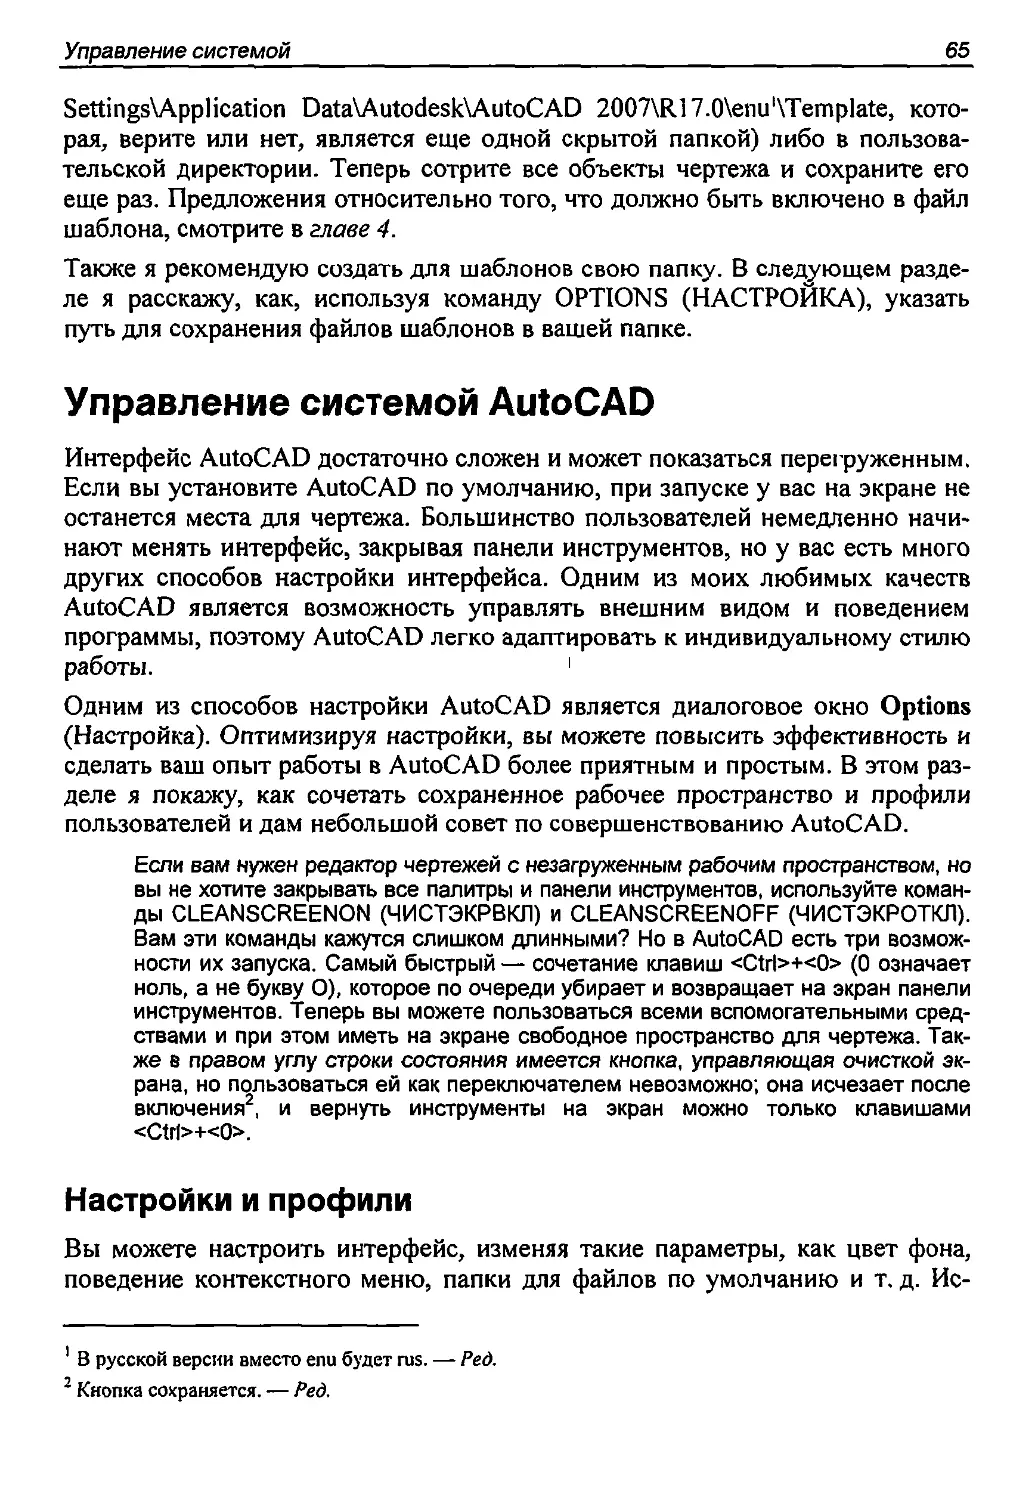 Управление системой AutoCAD
Настройки и профили